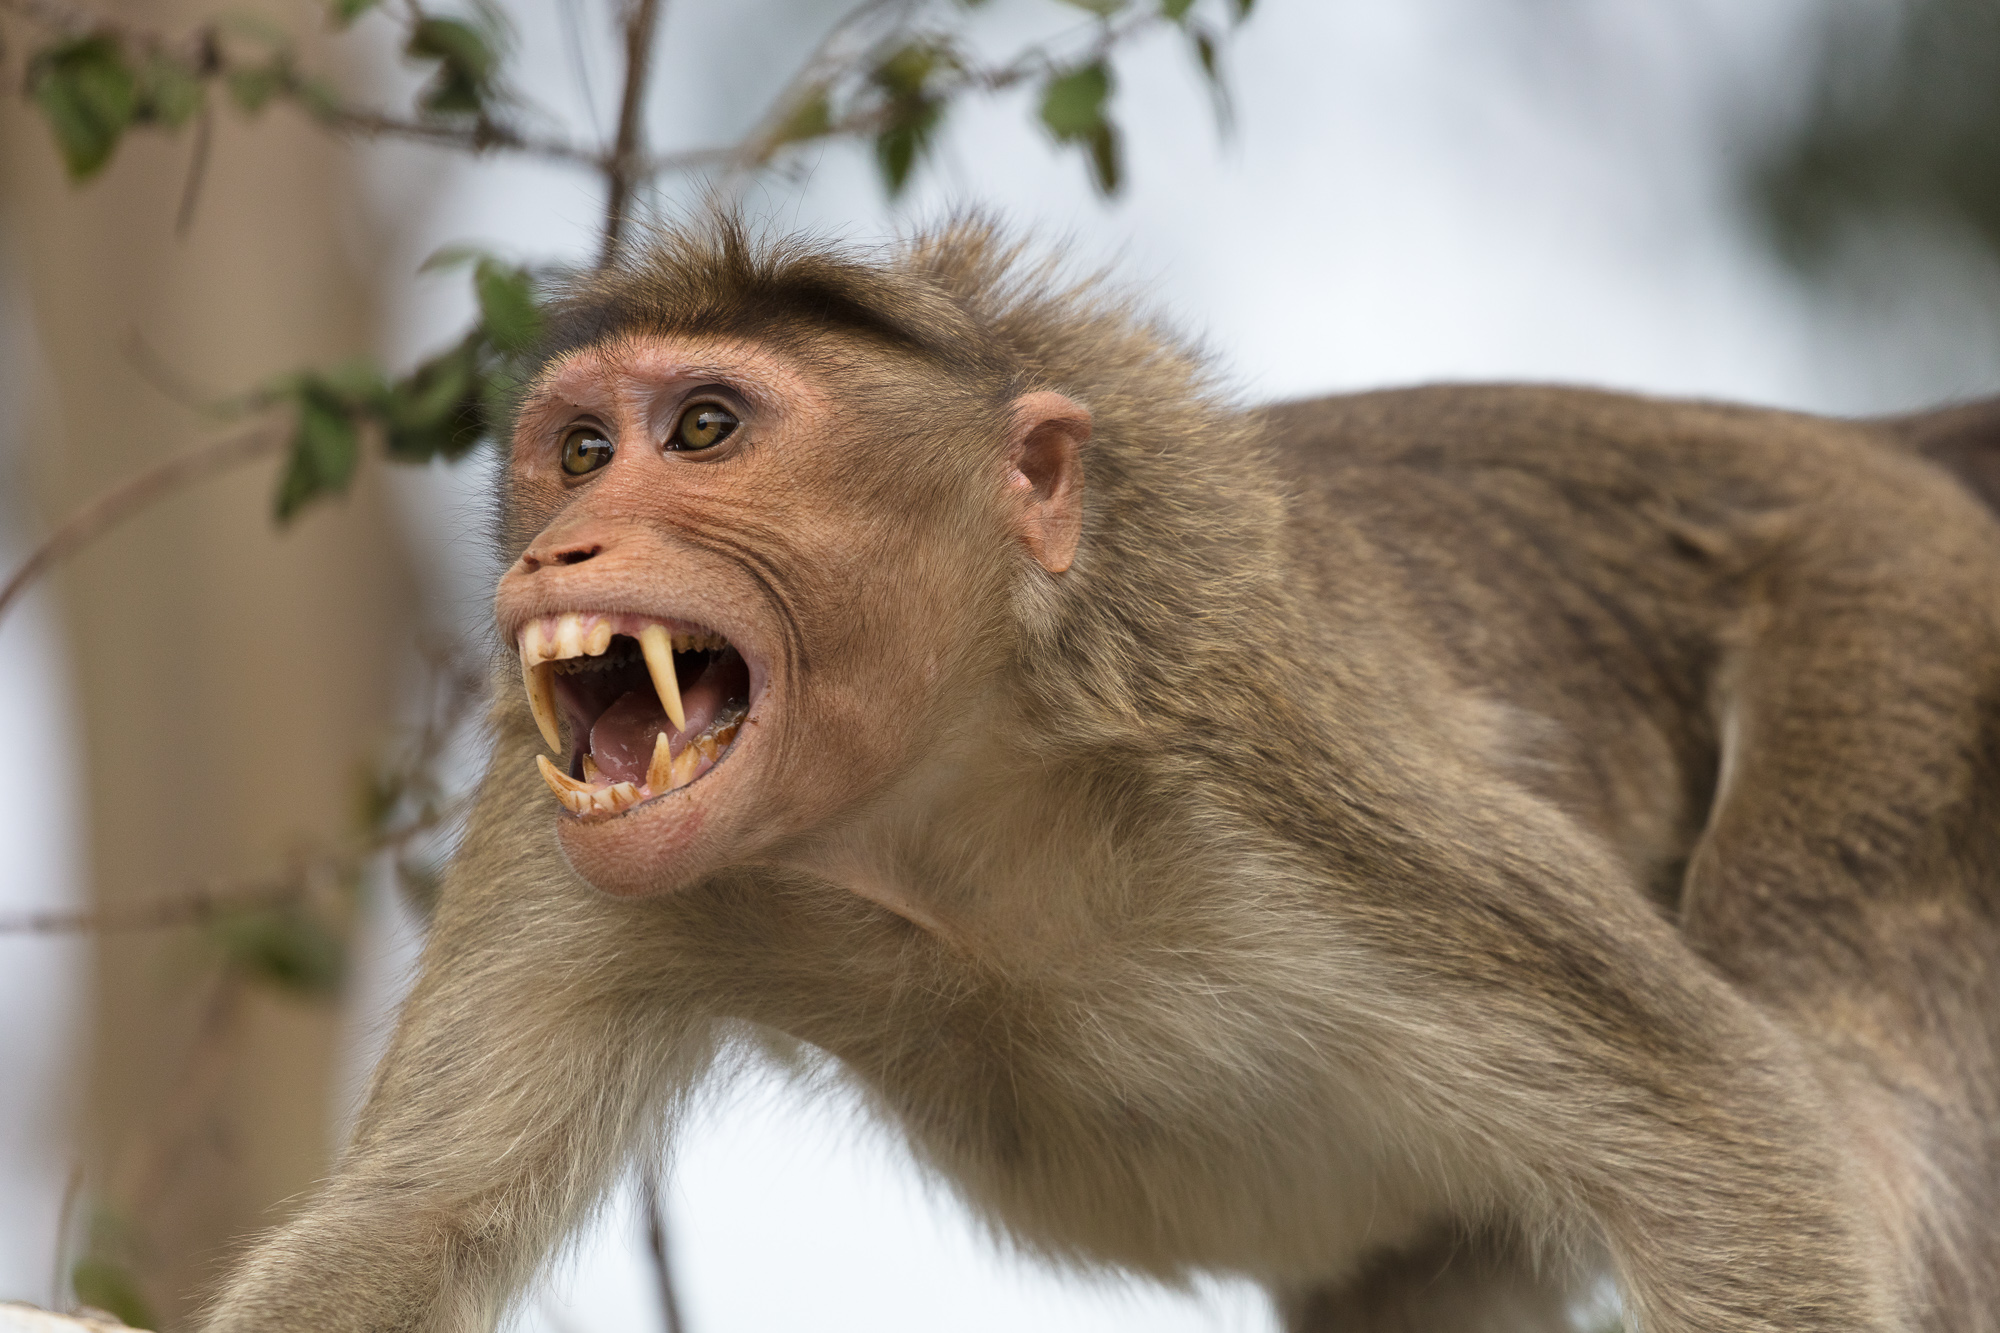 Khám phá thế giới của những chú khỉ hung dữ với những hành động vững vàng của chúng trong việc tìm kiếm thức ăn và bảo vệ lãnh thổ. Hãy xem ngay hình ảnh để hiểu rõ hơn về bản năng sinh tồn của các con khỉ.